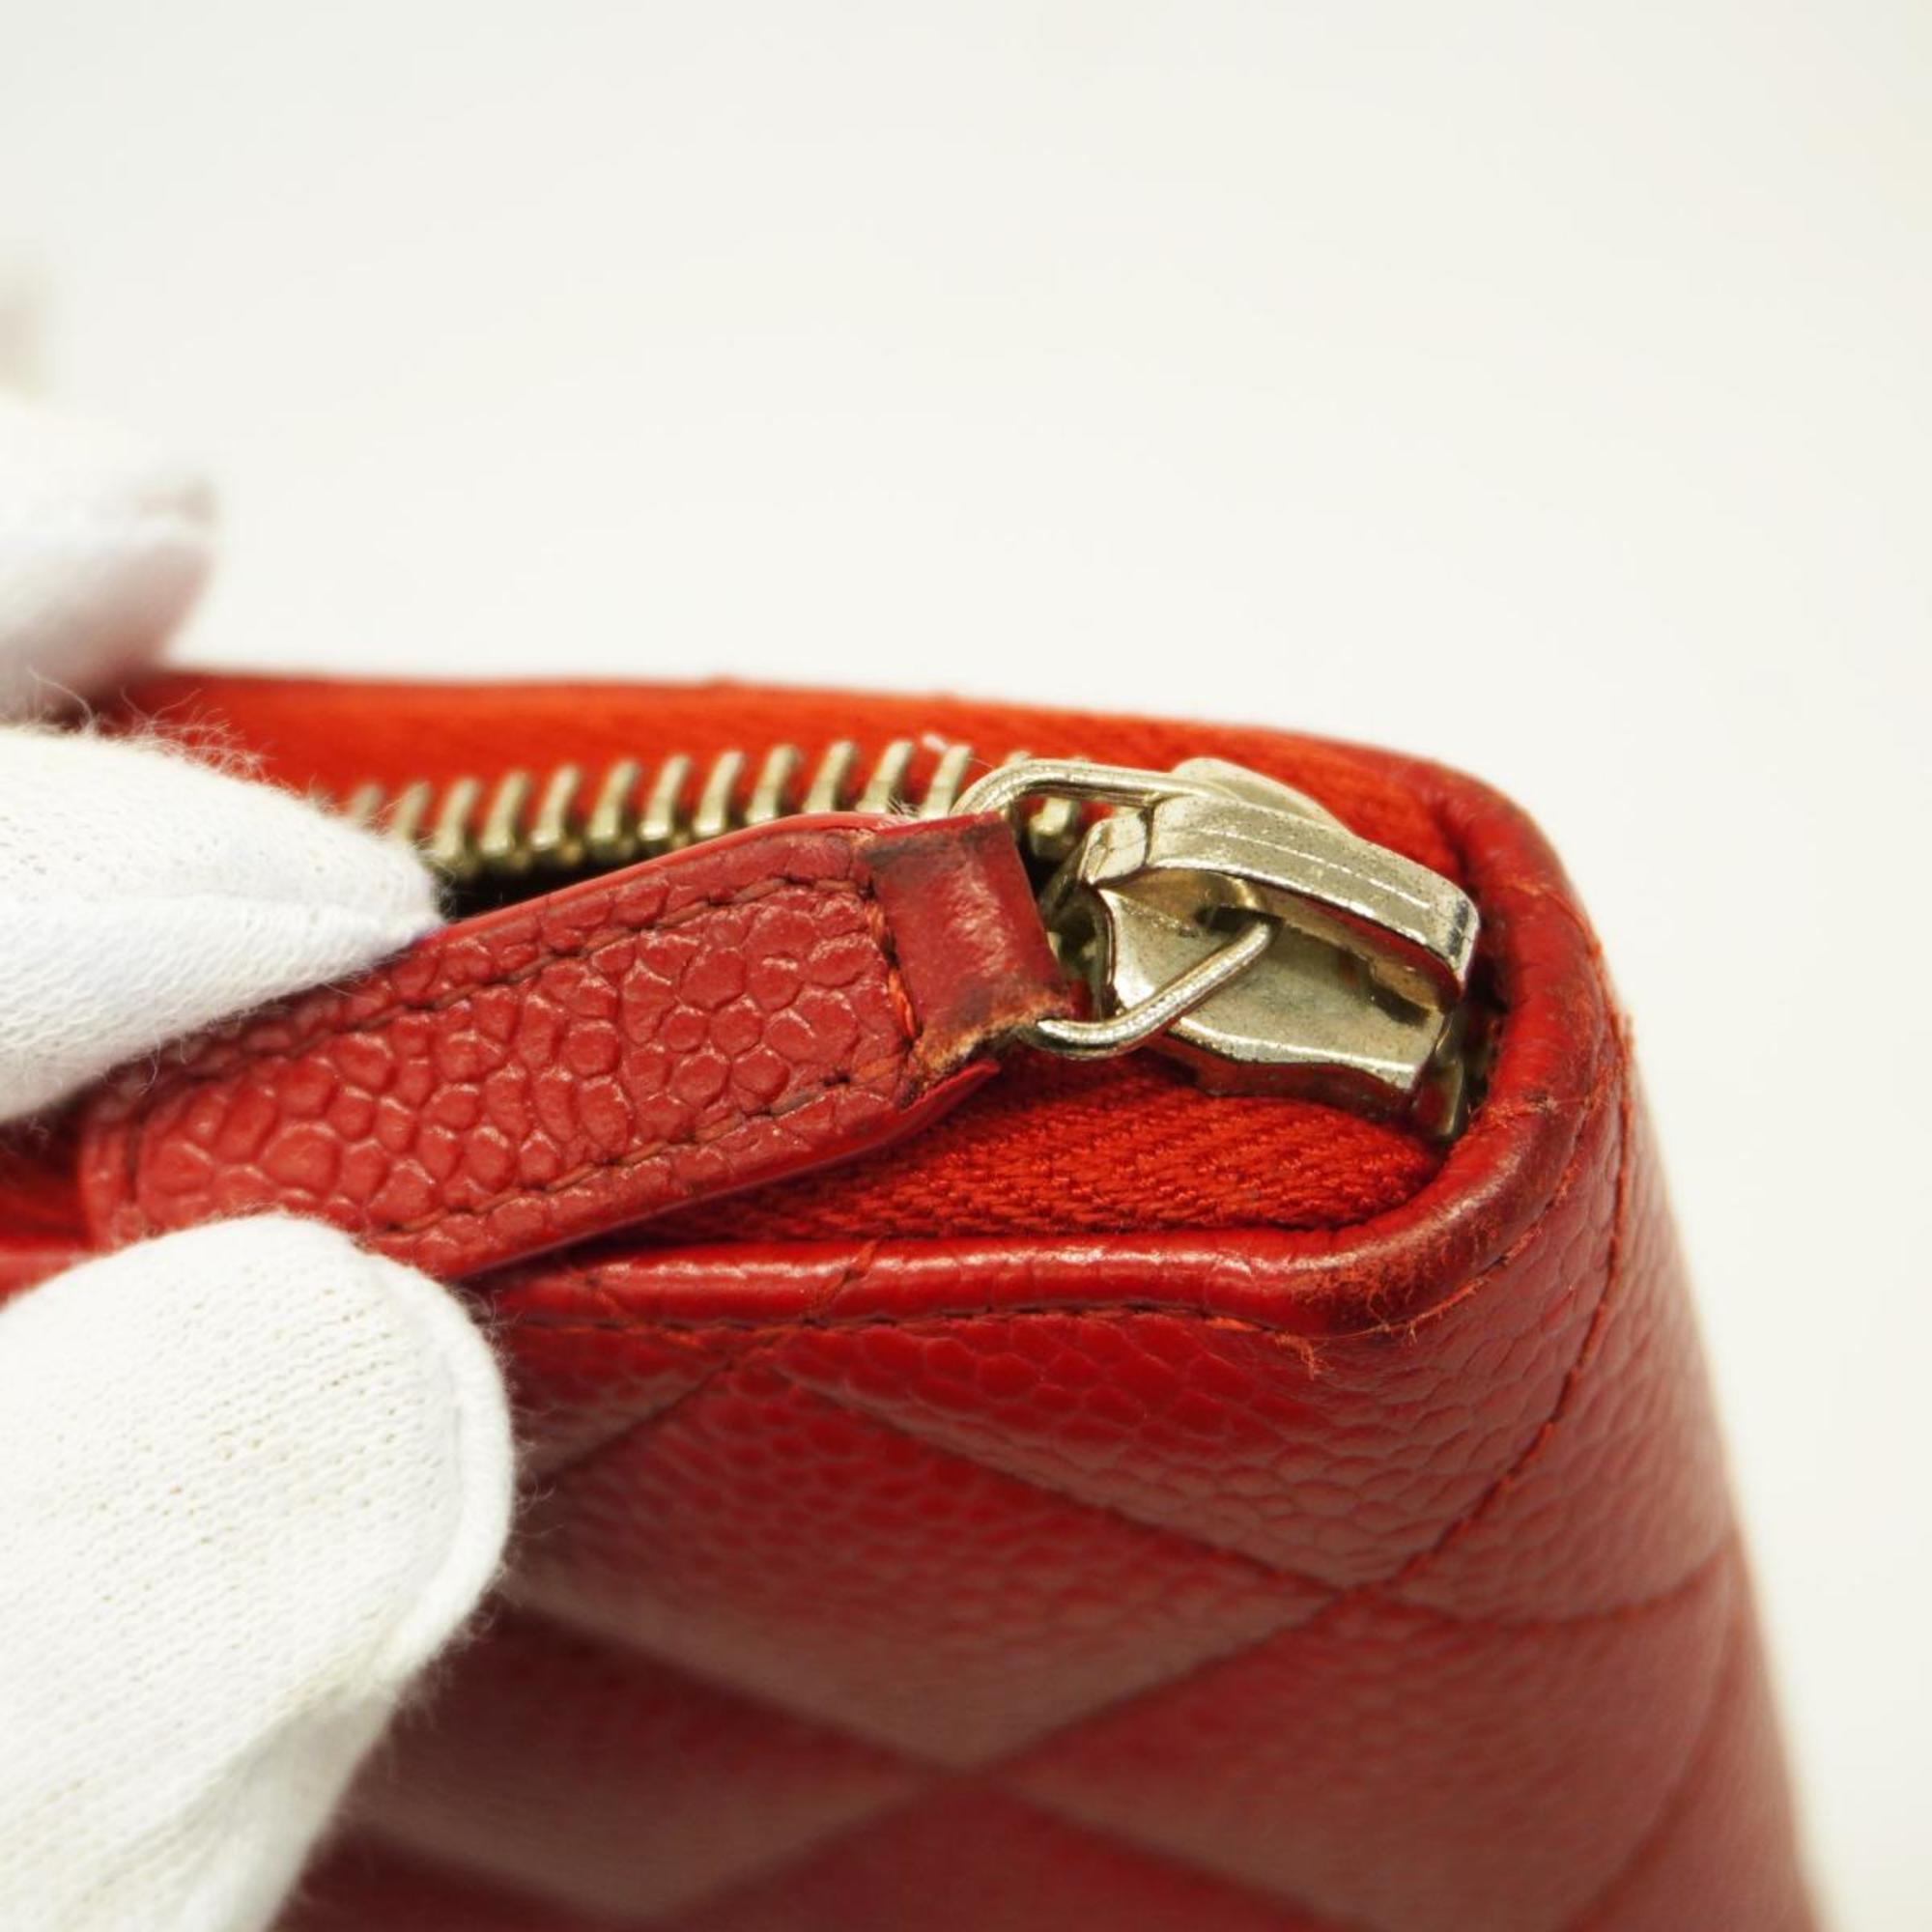 Chanel Long Wallet Matelasse Caviar Skin Red Women's